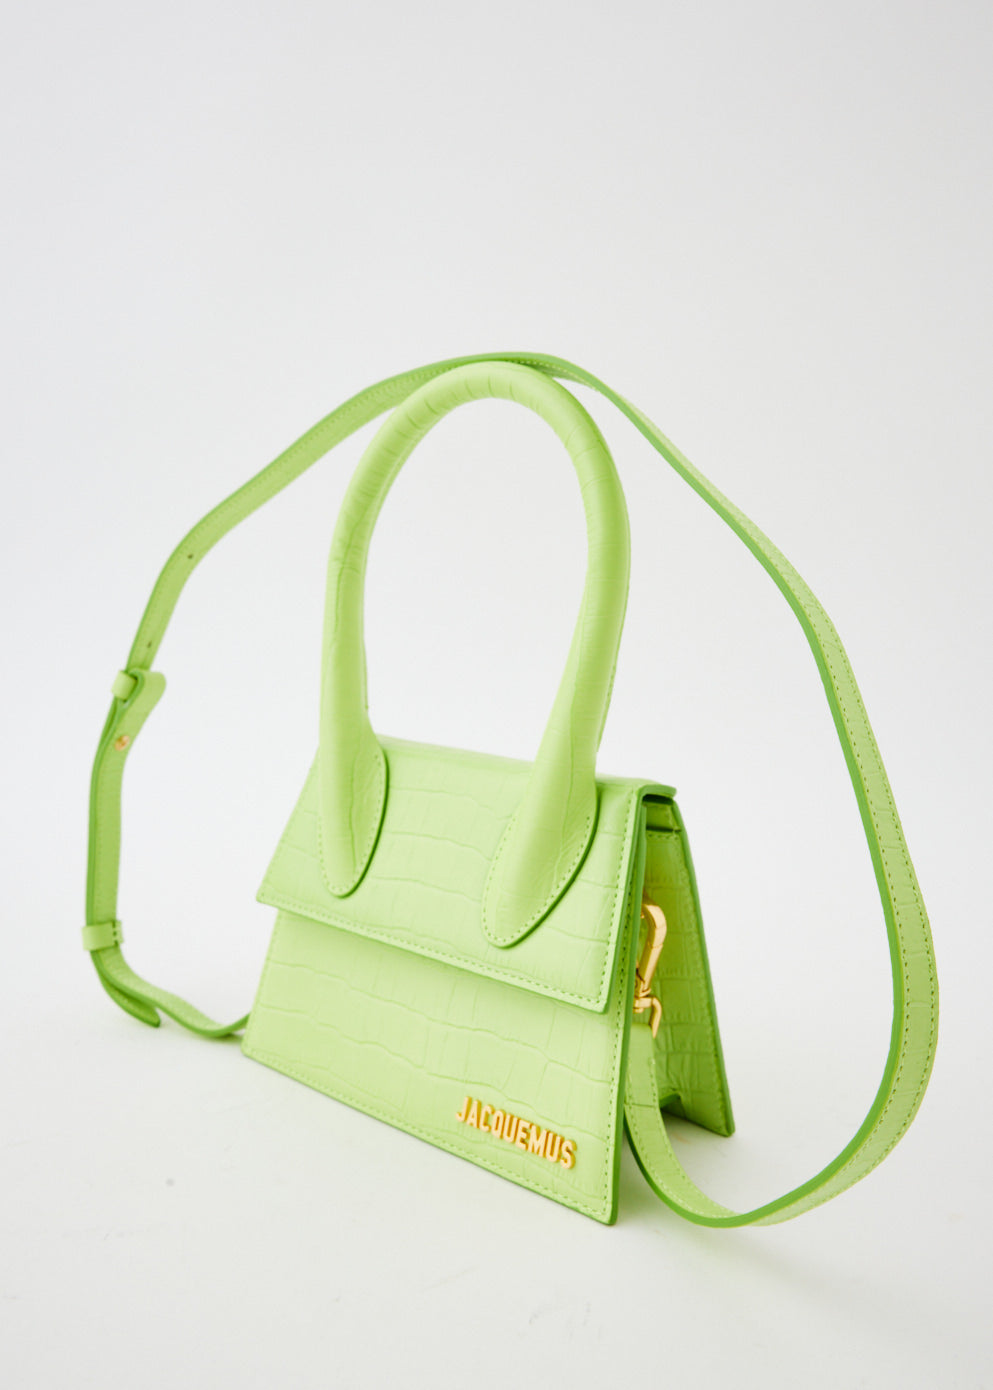 Le Chiquito Handbag